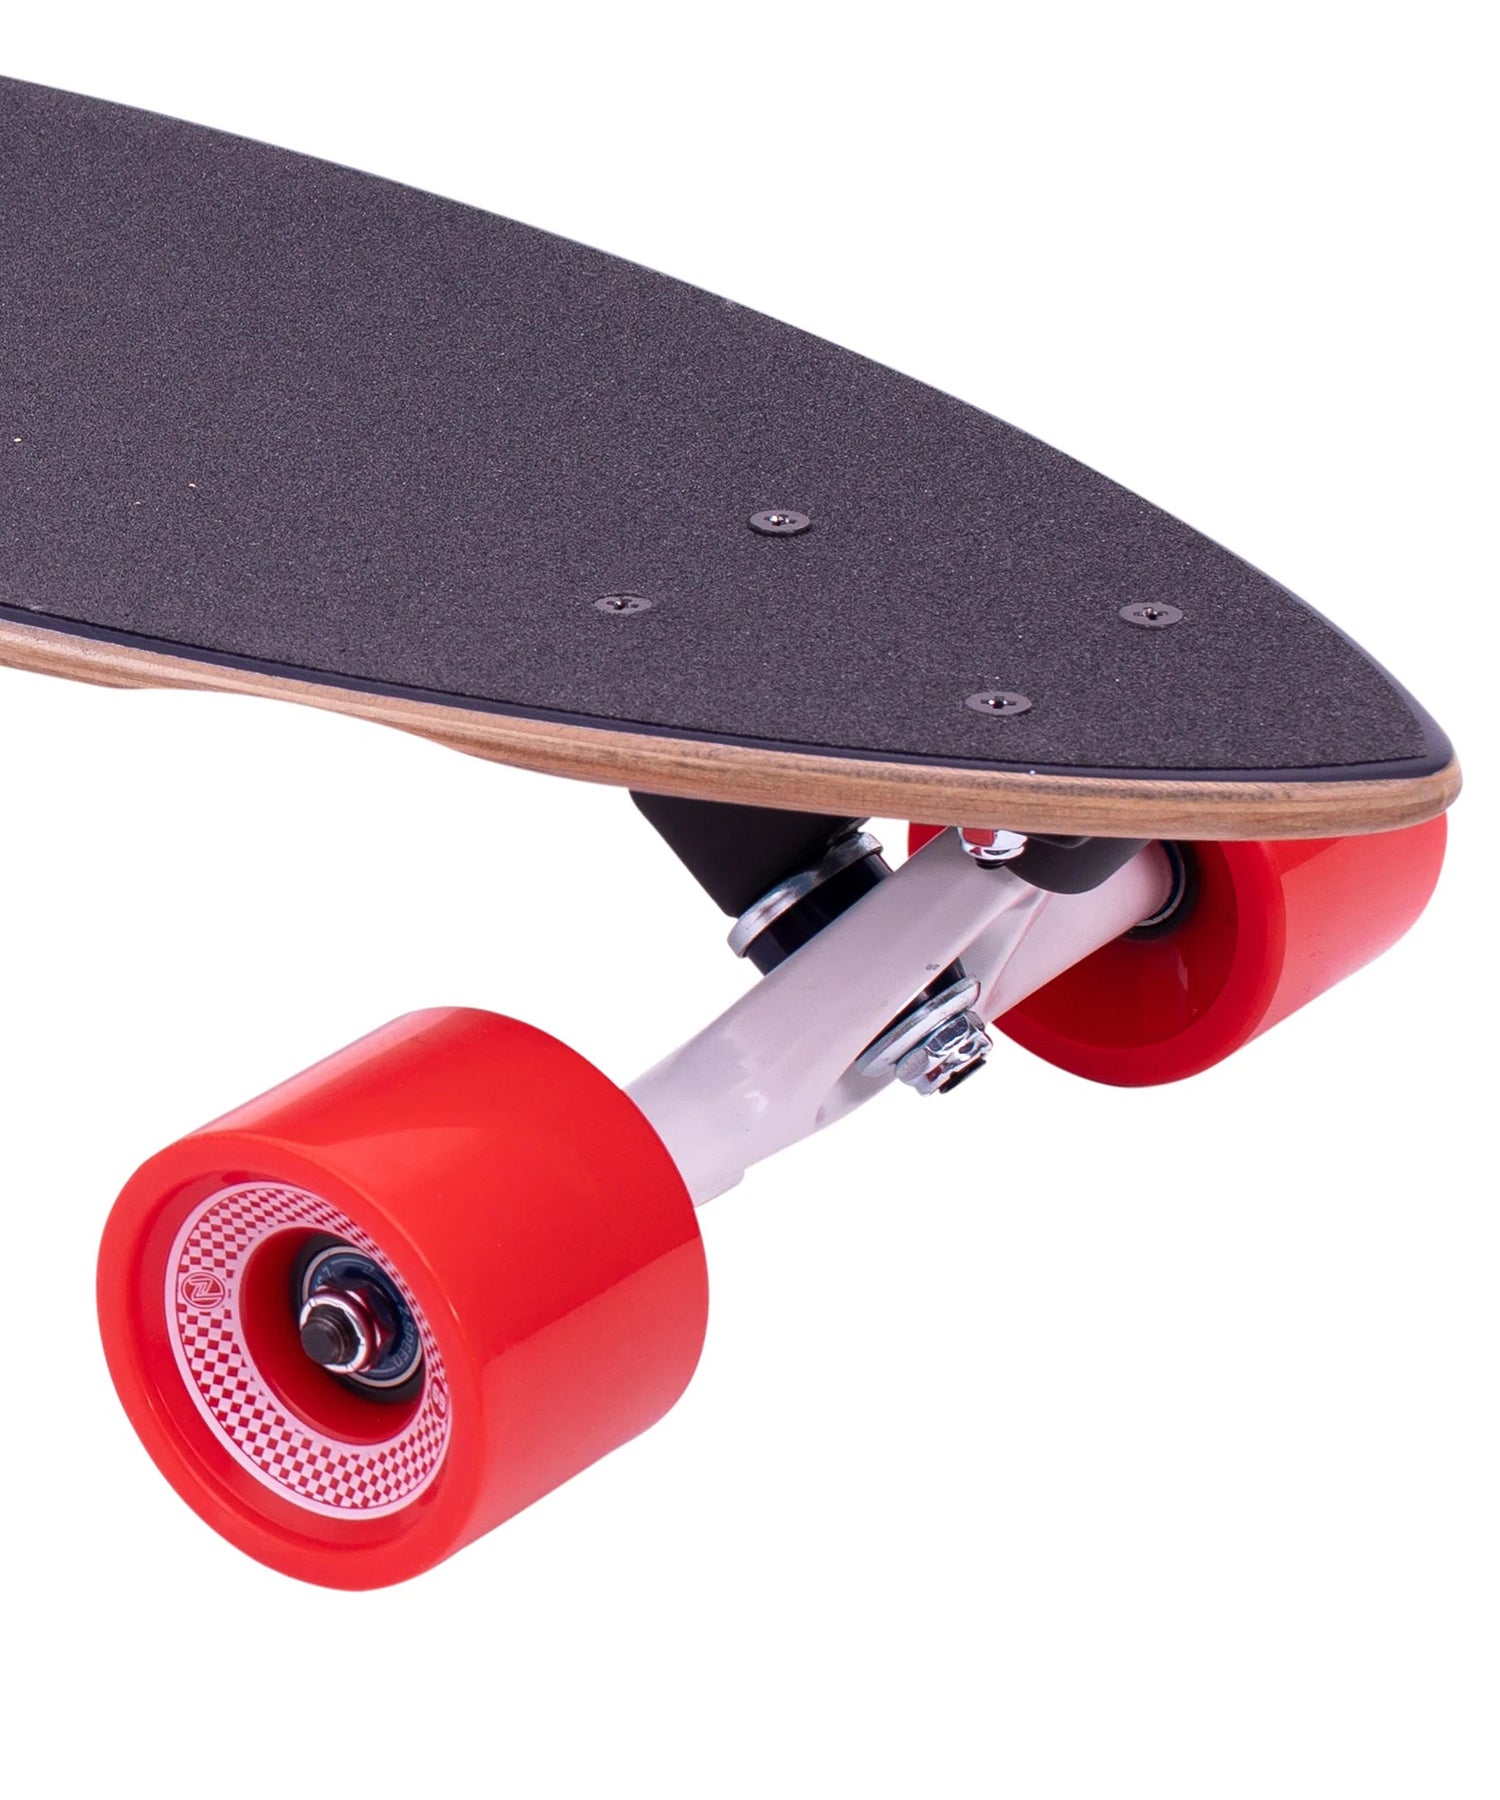 z-flex-surfagogo-longboard-forma pintail-medida 38"-ruedas-ejes-tabla-todo a punto para patinar-ruedas de 69 mm-tabla de 7 capas de arce.